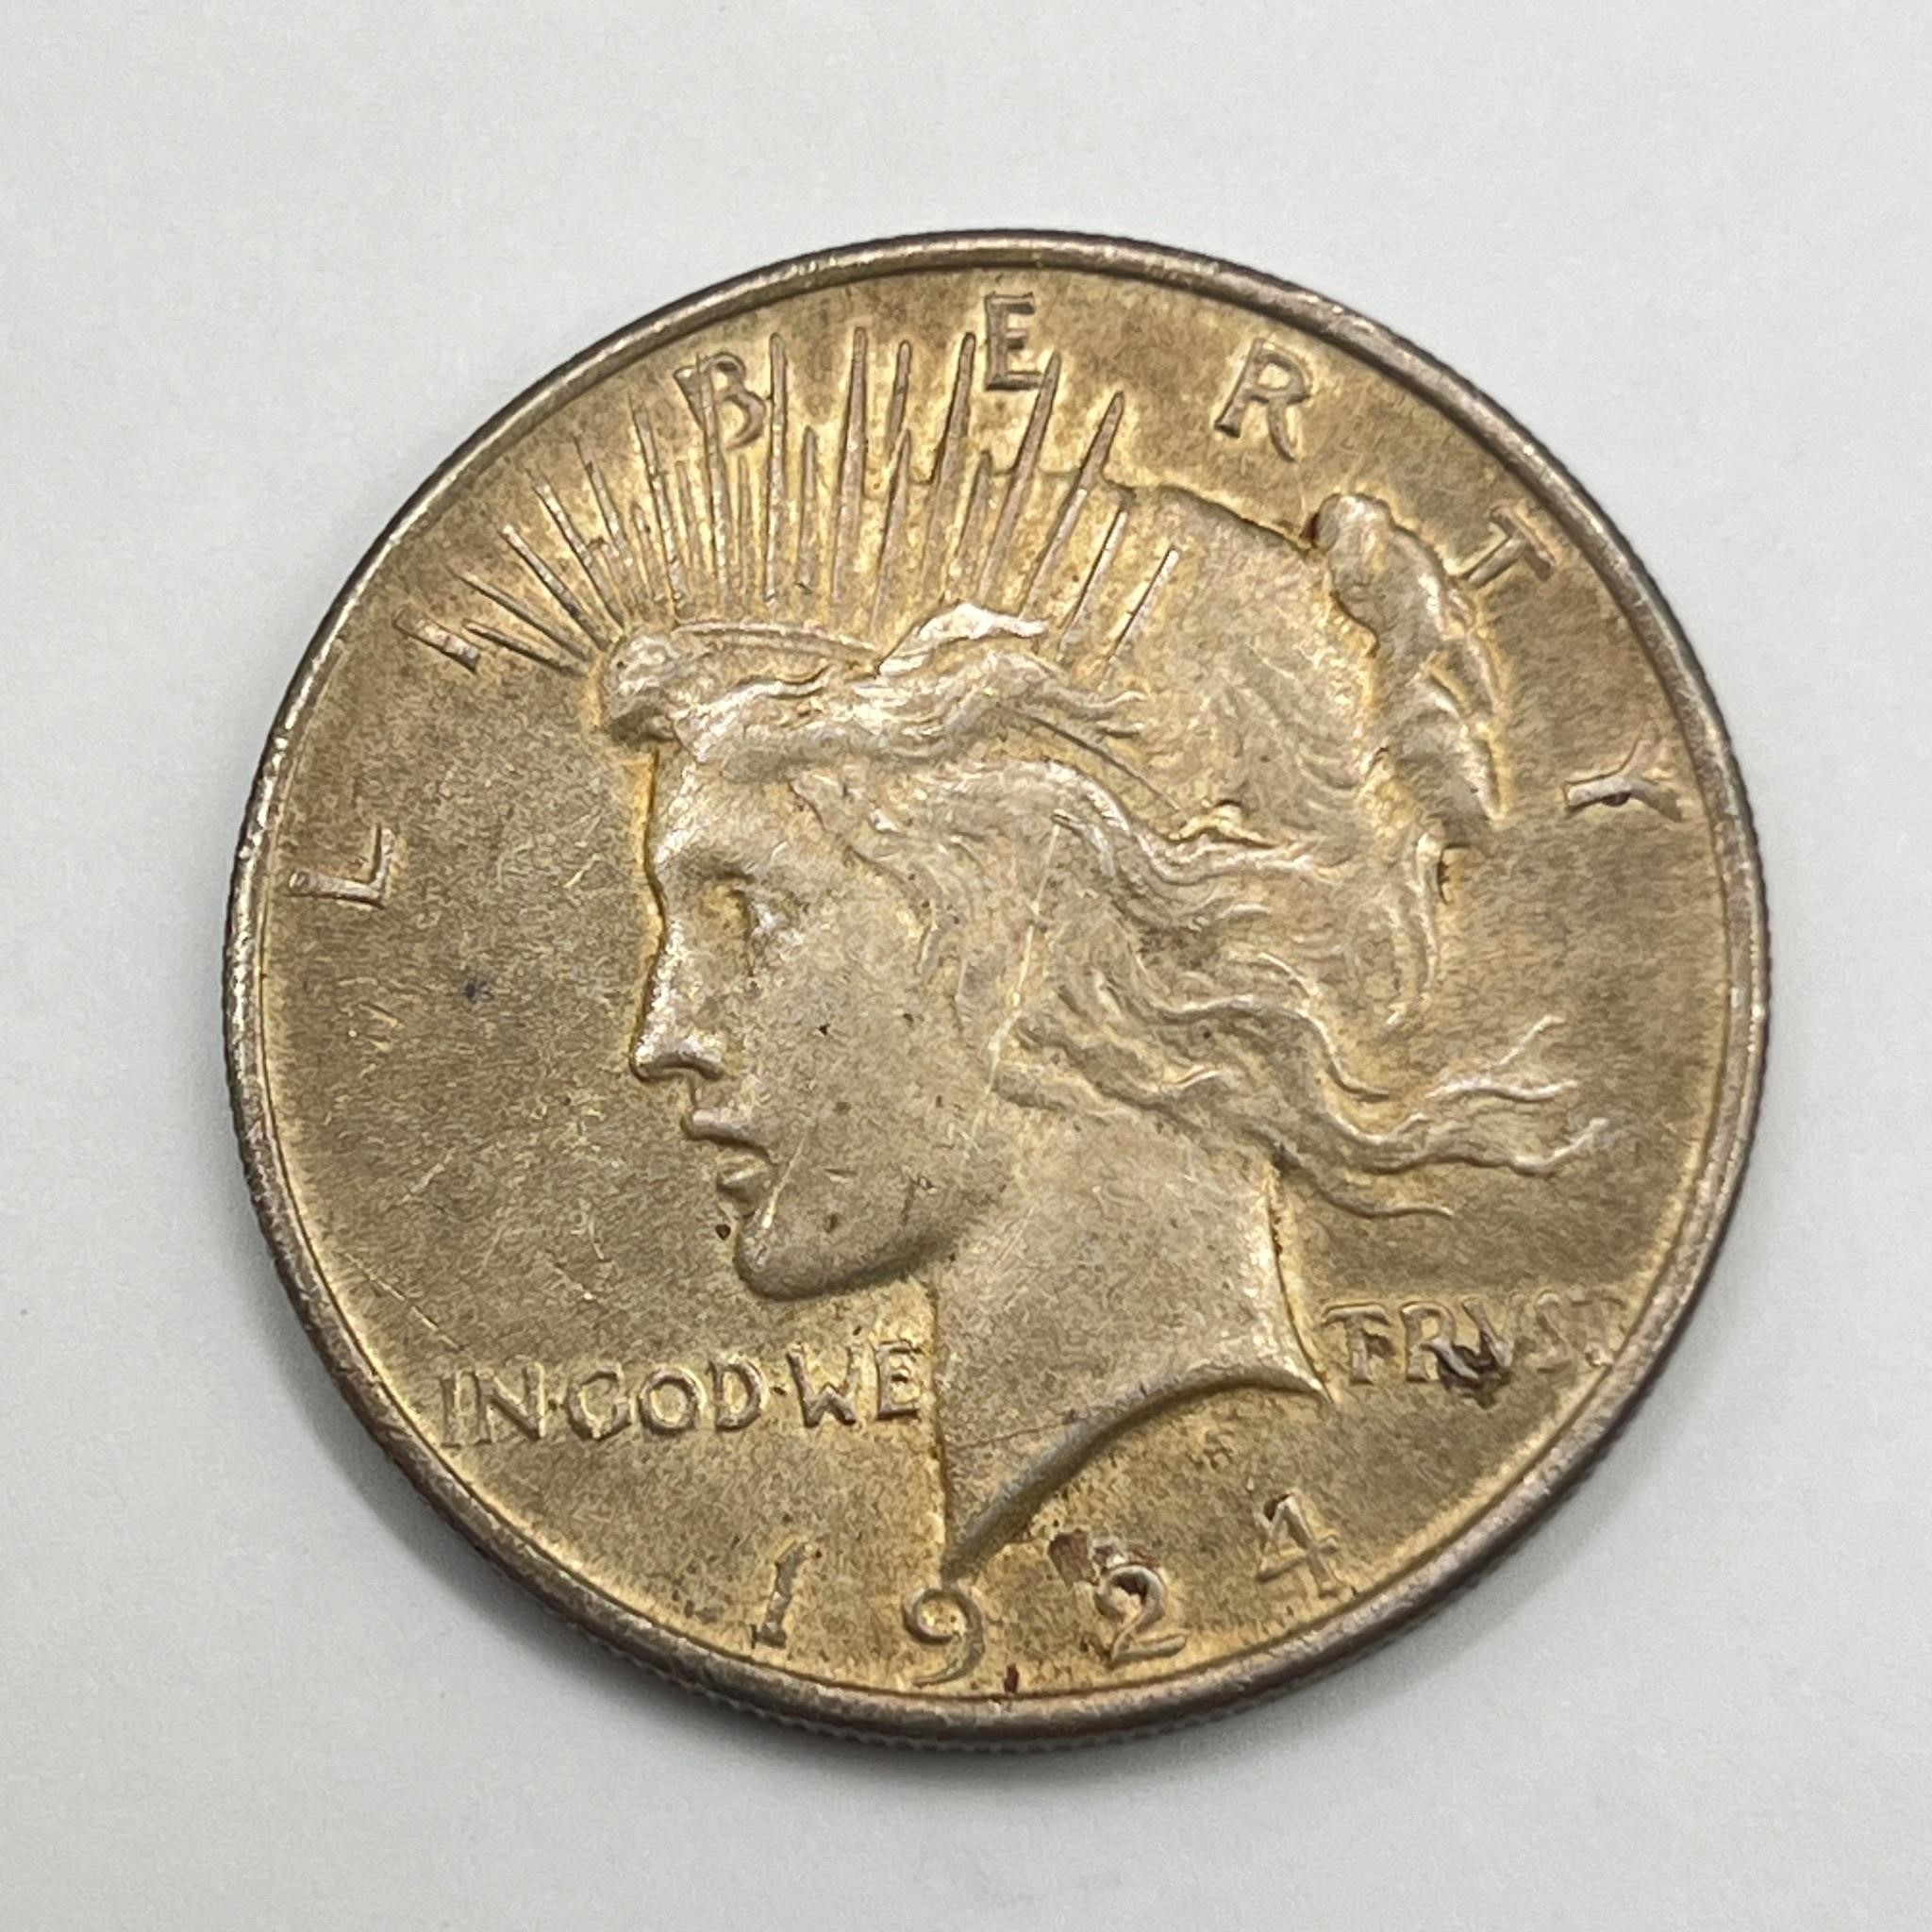 1924 Piece Dollar - Silver Coin